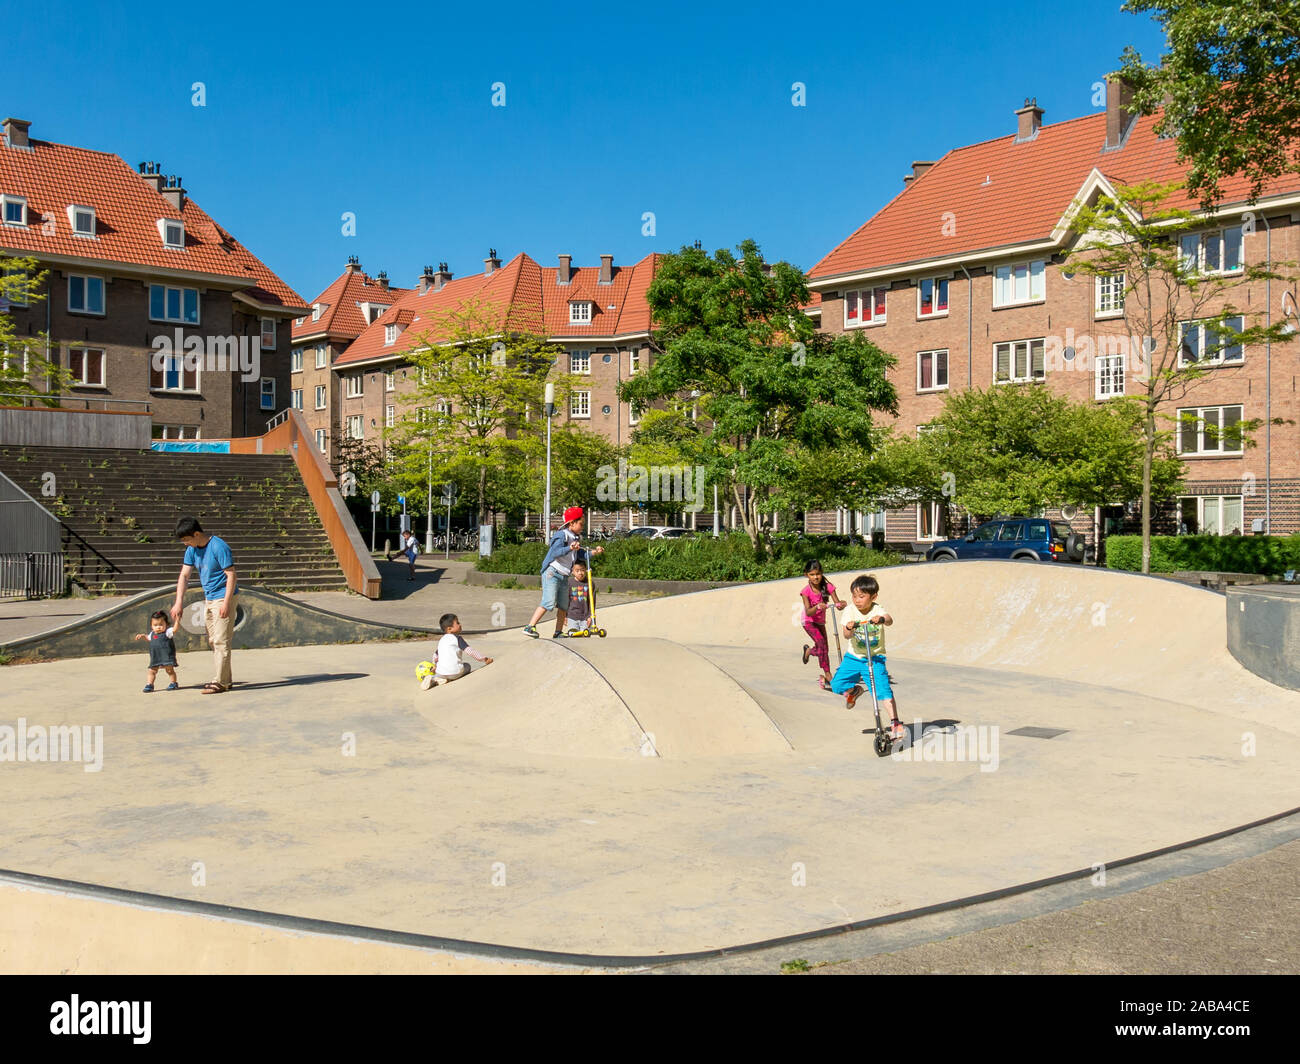 Kinder spielen auf Zaandammerplein Platz im Wohngebiet namens Spaarndammerbuurt in West Bezirk der Stadt Amsterdam, Niederlande Stockfoto